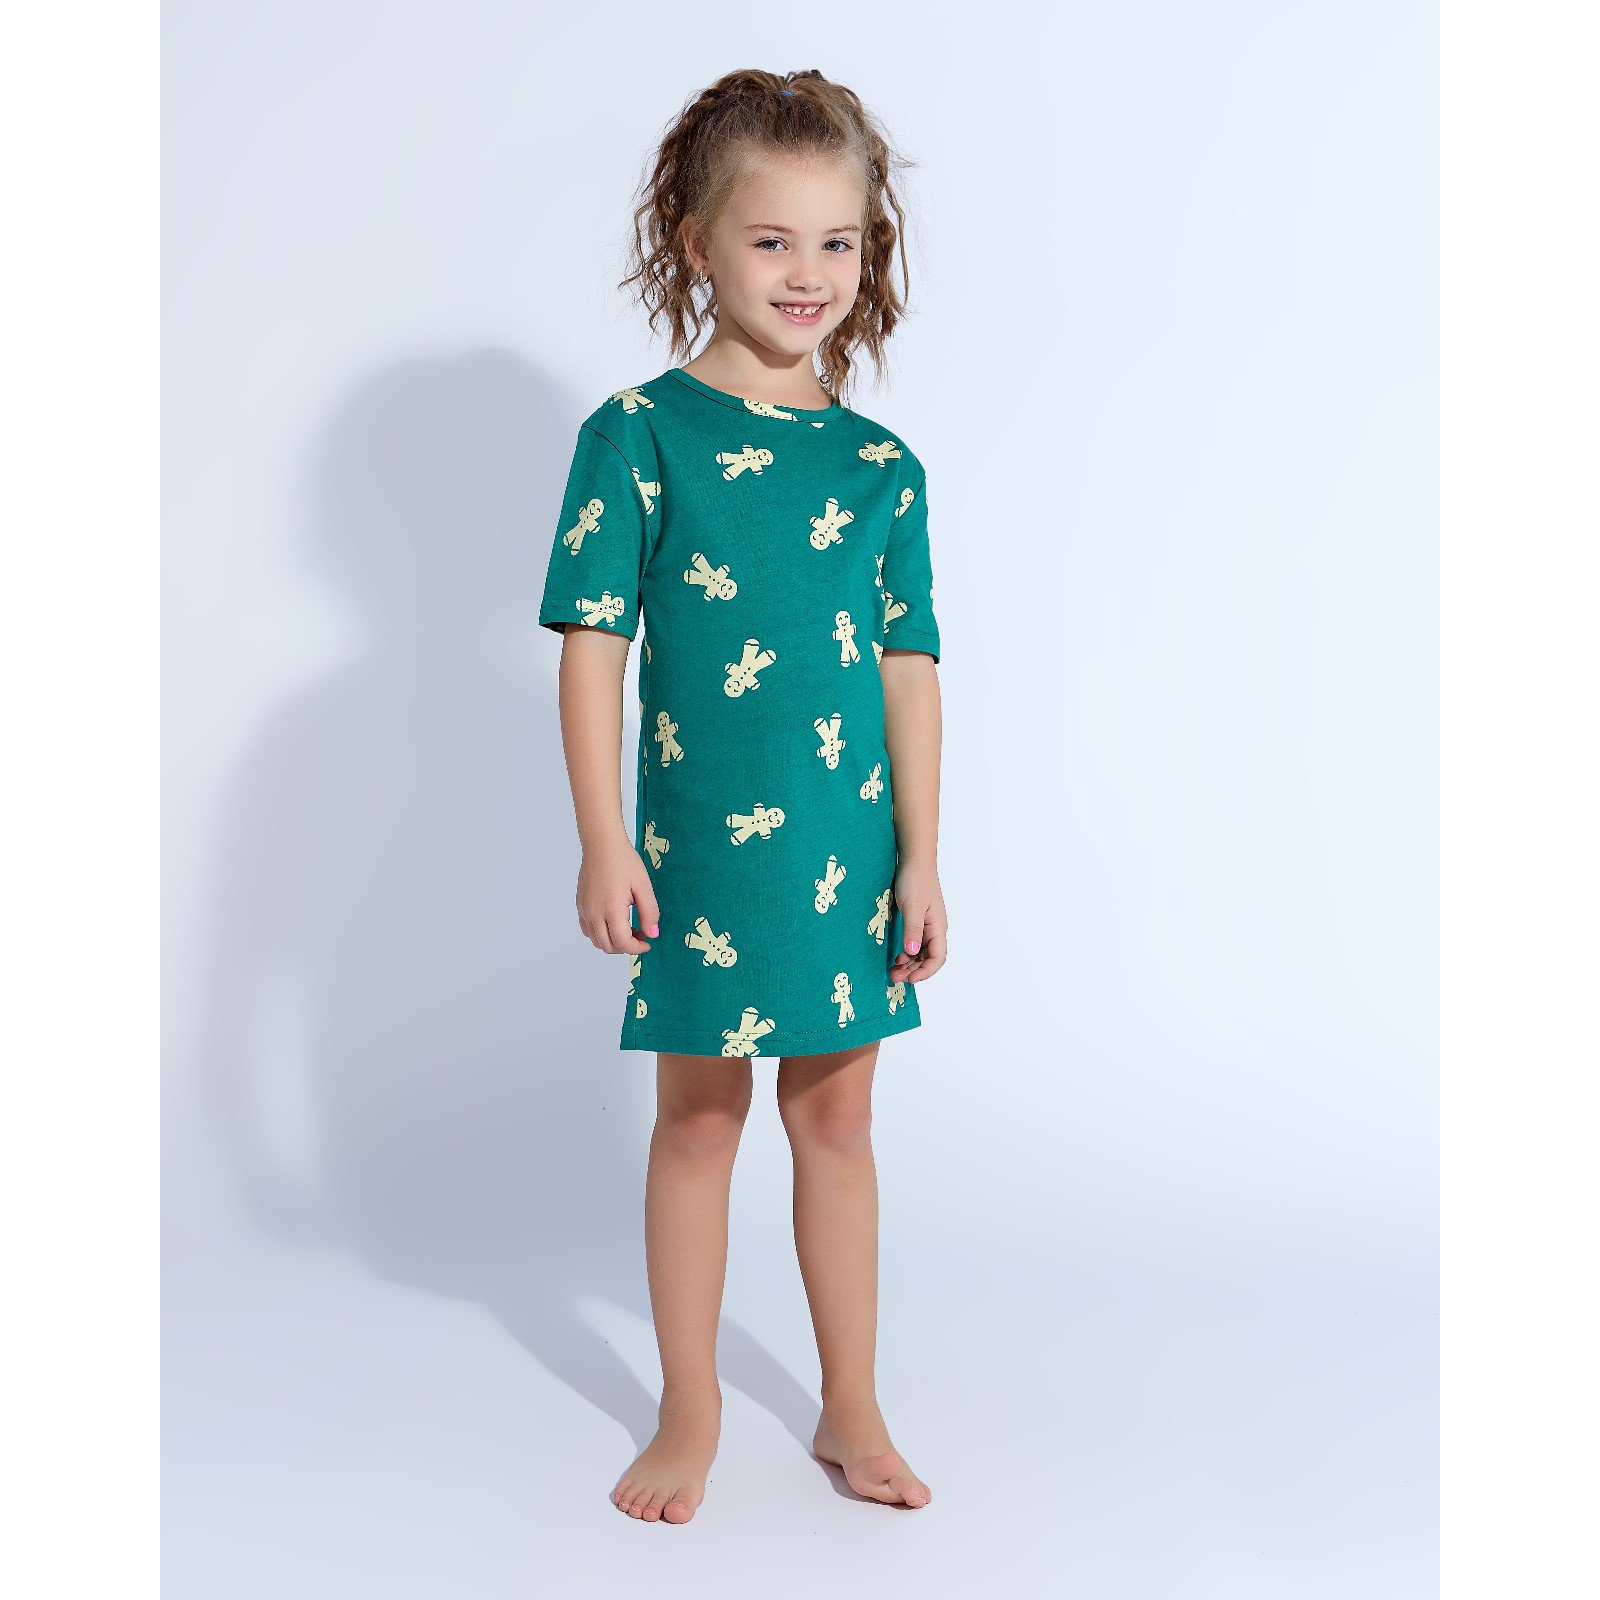 Детская ночная сорочка Печеньки Цвет: Зелёный (3 года), размер 3 года mak600432 Детская ночная сорочка Печеньки Цвет: Зелёный (3 года) - фото 1